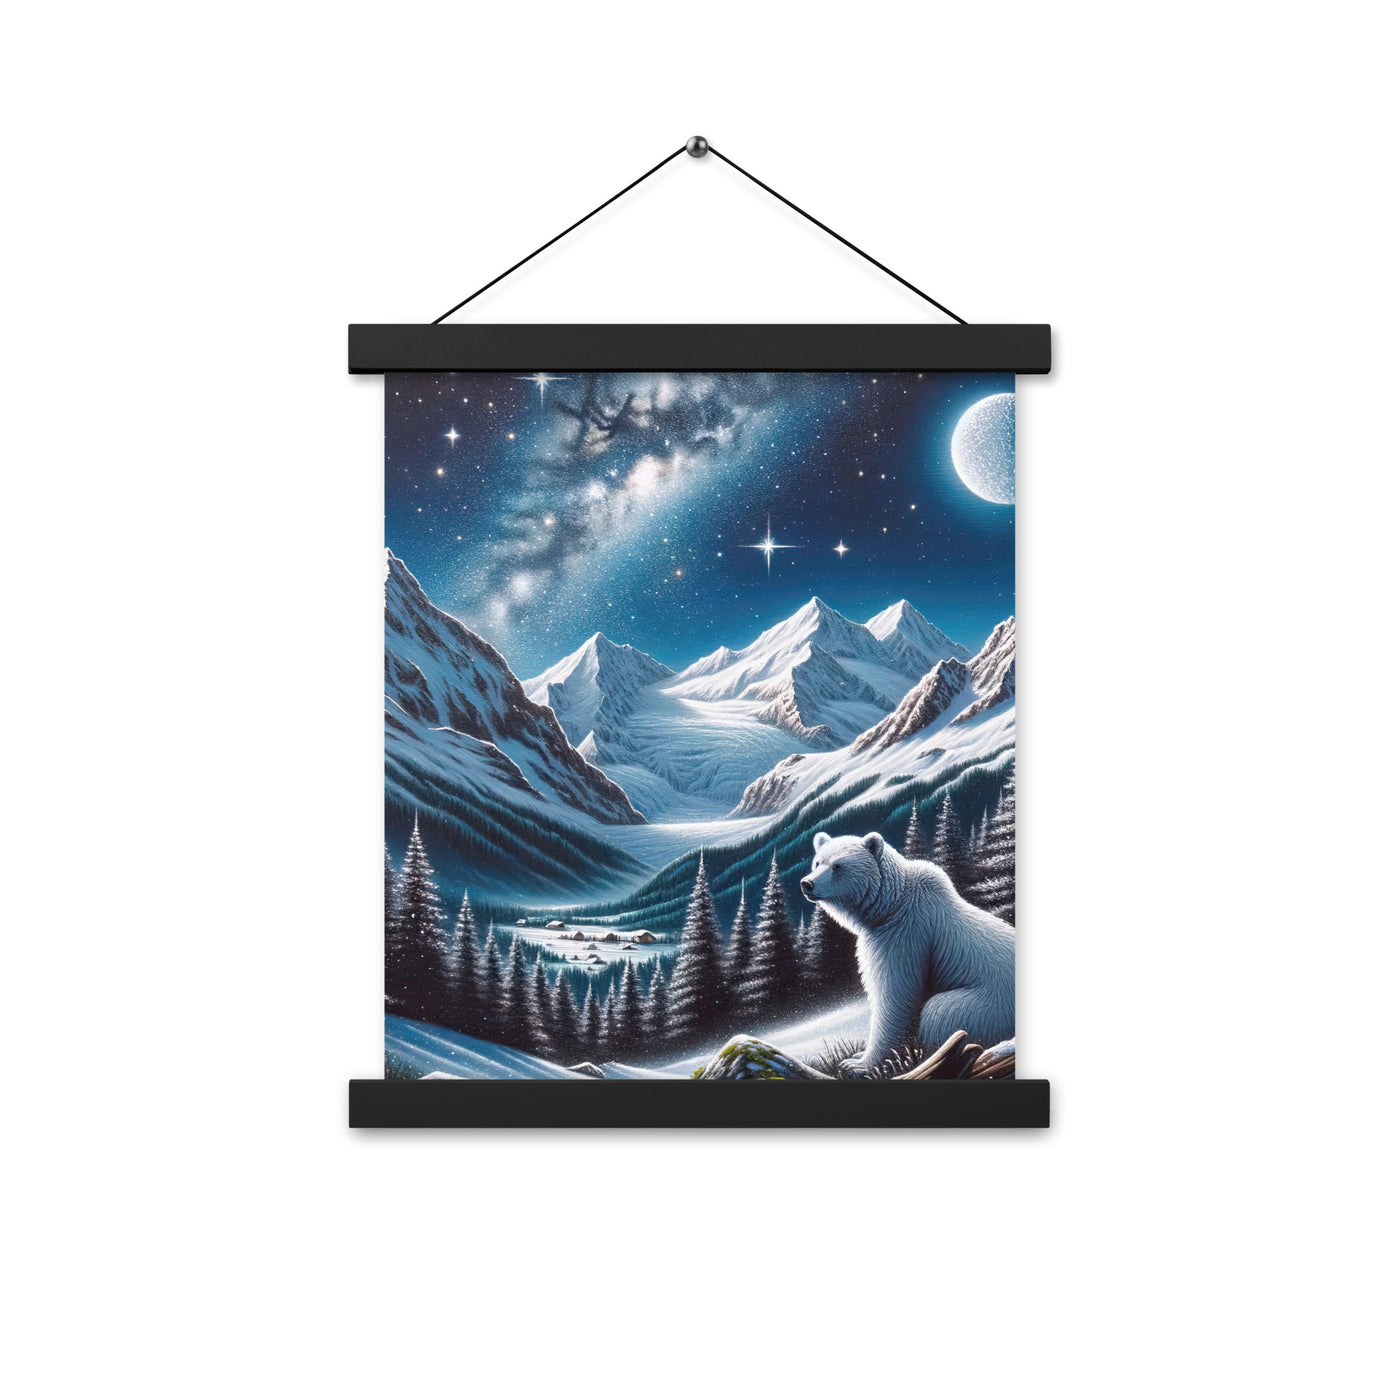 Sternennacht und Eisbär: Acrylgemälde mit Milchstraße, Alpen und schneebedeckte Gipfel - Premium Poster mit Aufhängung camping xxx yyy zzz 27.9 x 35.6 cm